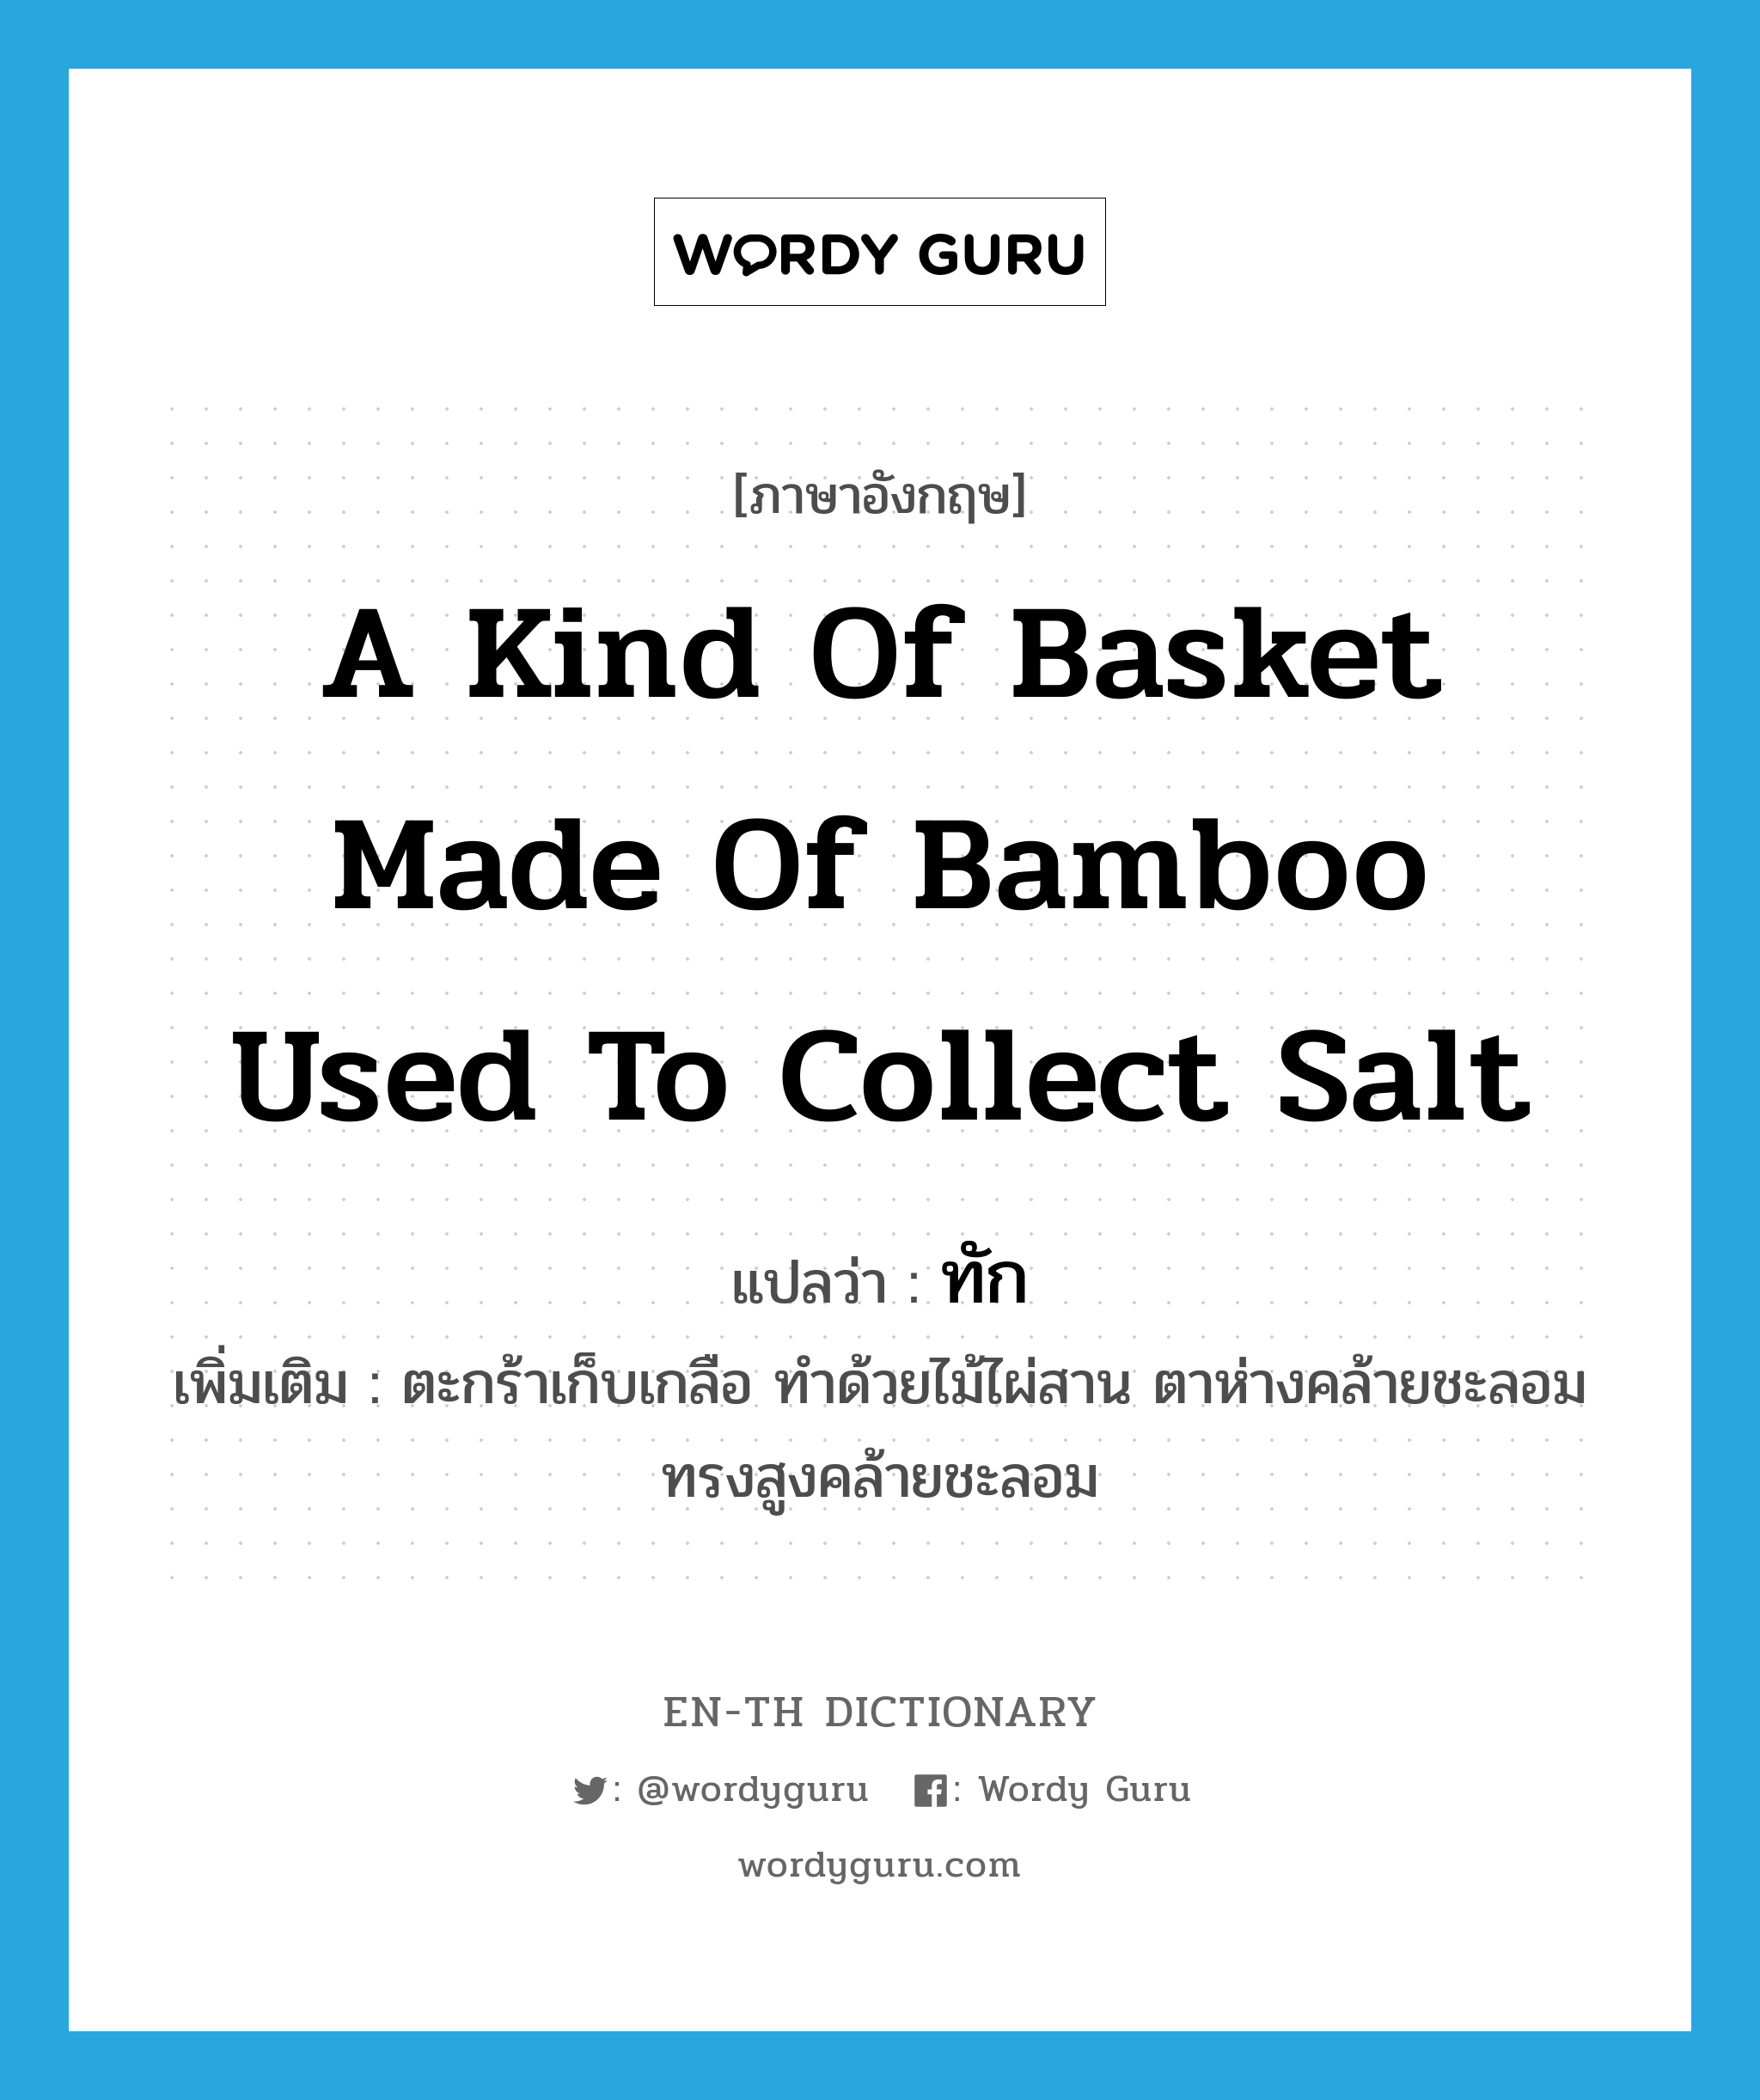 a kind of basket made of bamboo used to collect salt แปลว่า? คำศัพท์ในกลุ่มประเภท N, คำศัพท์ภาษาอังกฤษ a kind of basket made of bamboo used to collect salt แปลว่า ทัก ประเภท N เพิ่มเติม ตะกร้าเก็บเกลือ ทำด้วยไม้ไผ่สาน ตาห่างคล้ายชะลอม ทรงสูงคล้ายชะลอม หมวด N